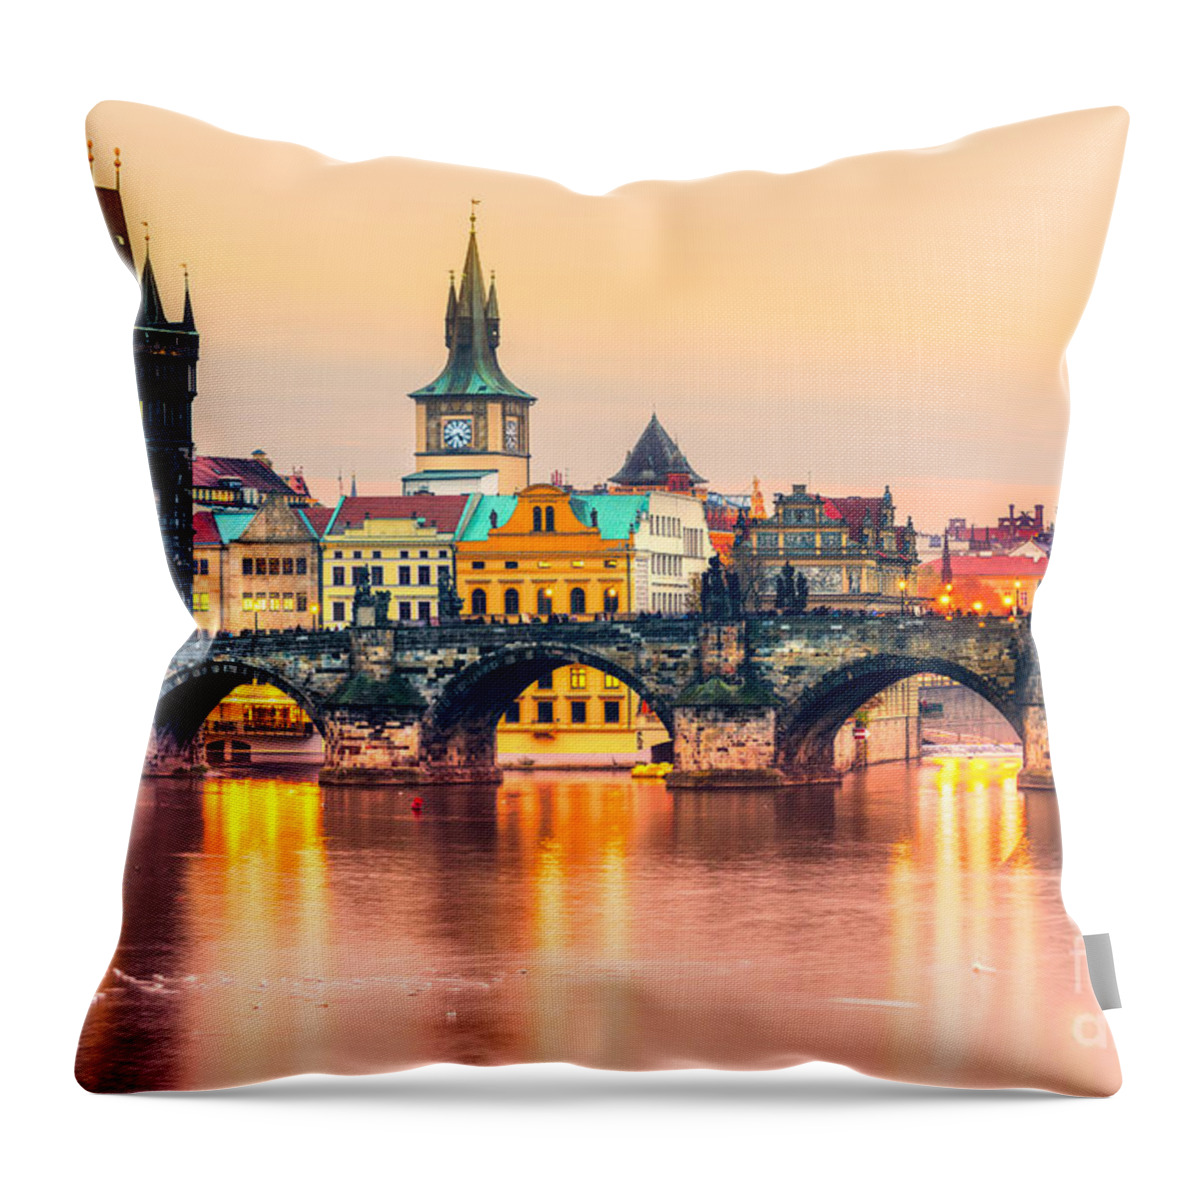 Czech Throw Pillow featuring the photograph Prague - Czech Republic by Luciano Mortula